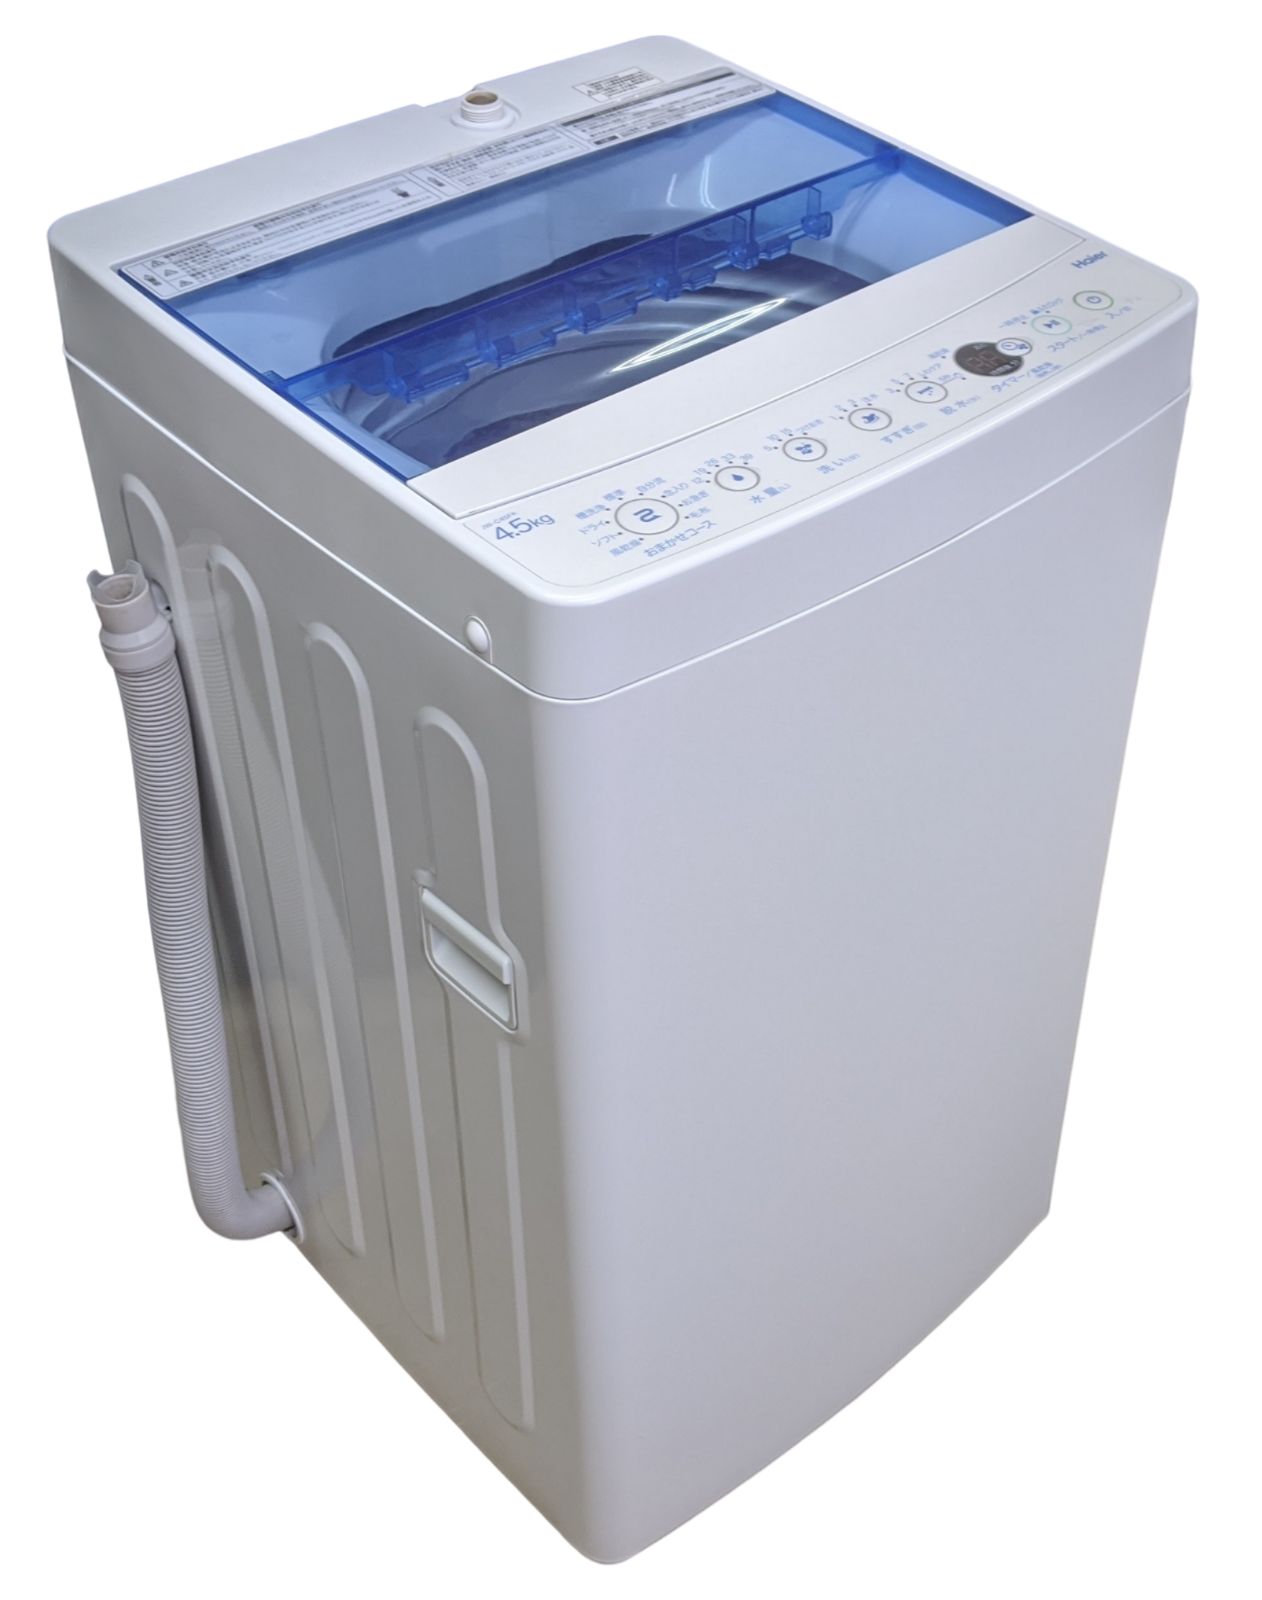 お値下しました‼️1/26(木)まで】Haier洗濯機4.5kg 2019年製送料込みの 